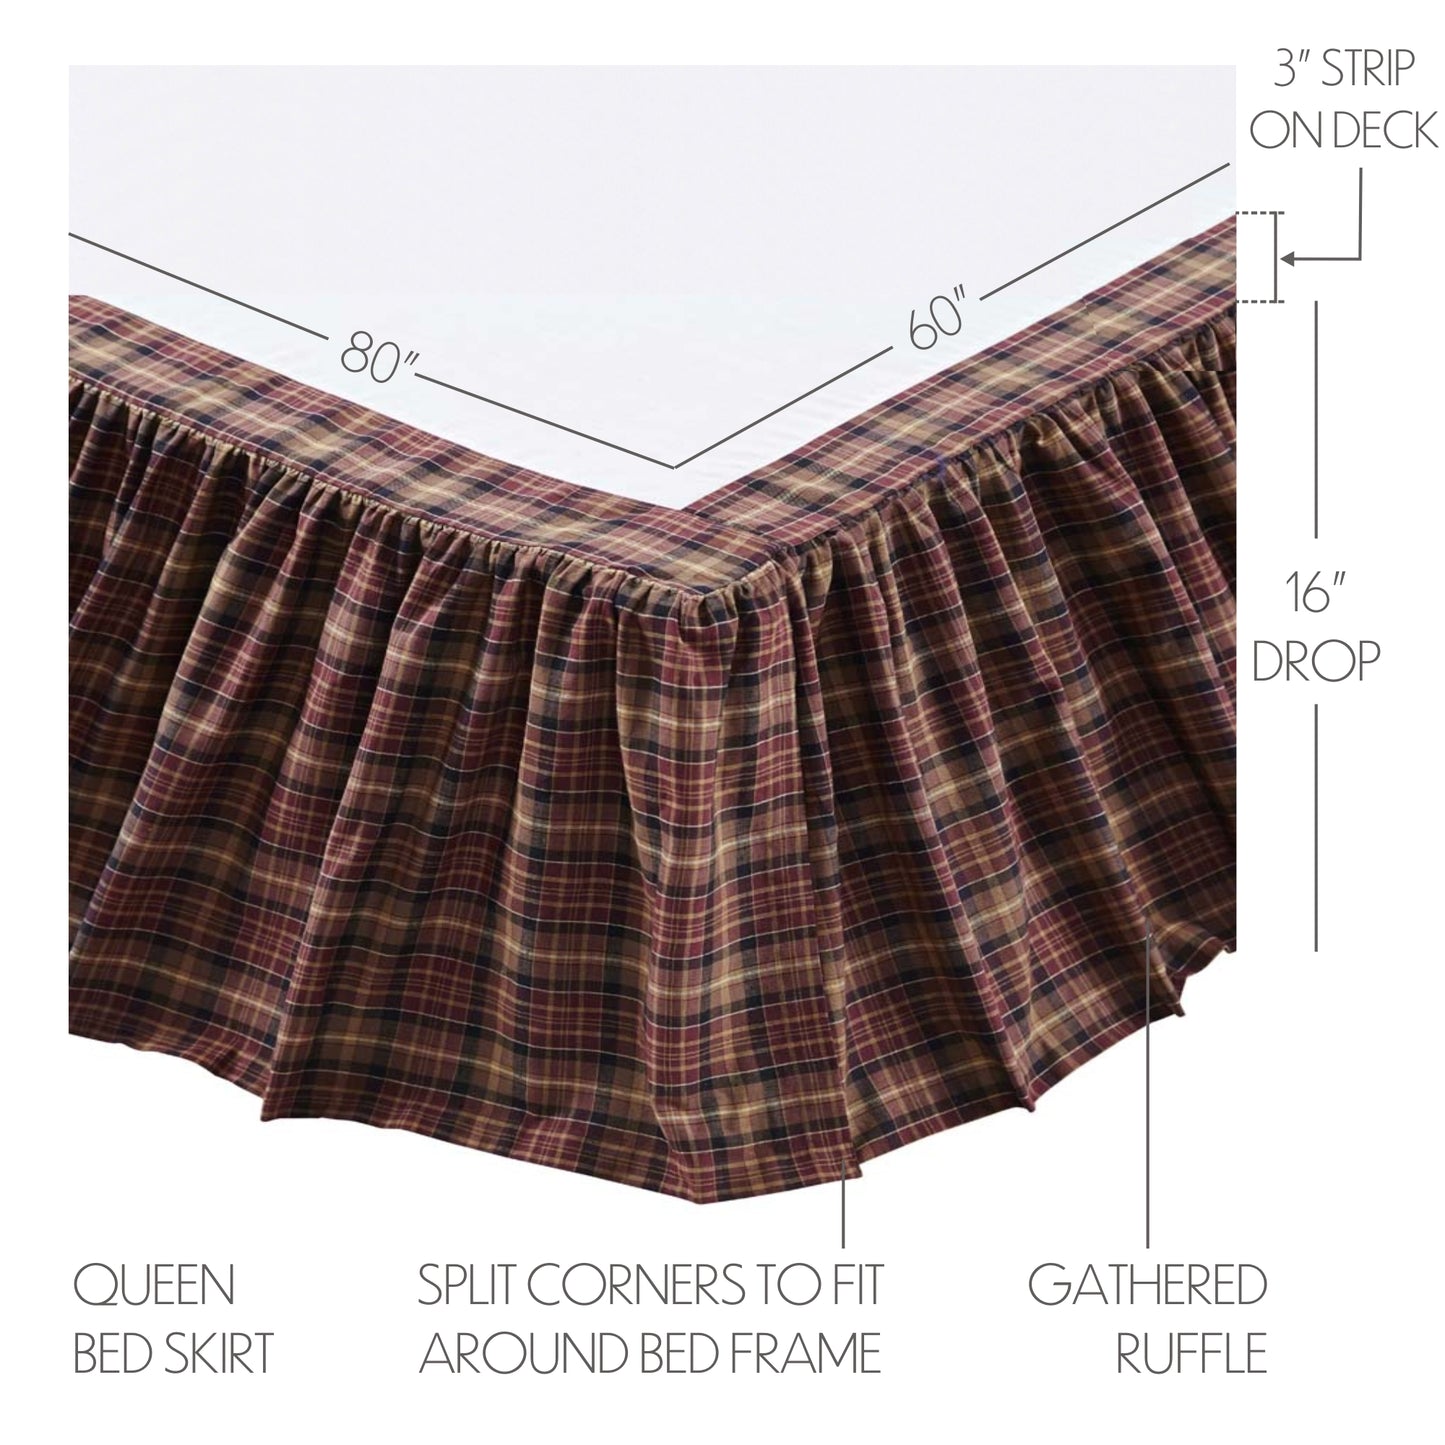 Abilene Star Queen Bed Skirt 60x80x16 SpadezStore